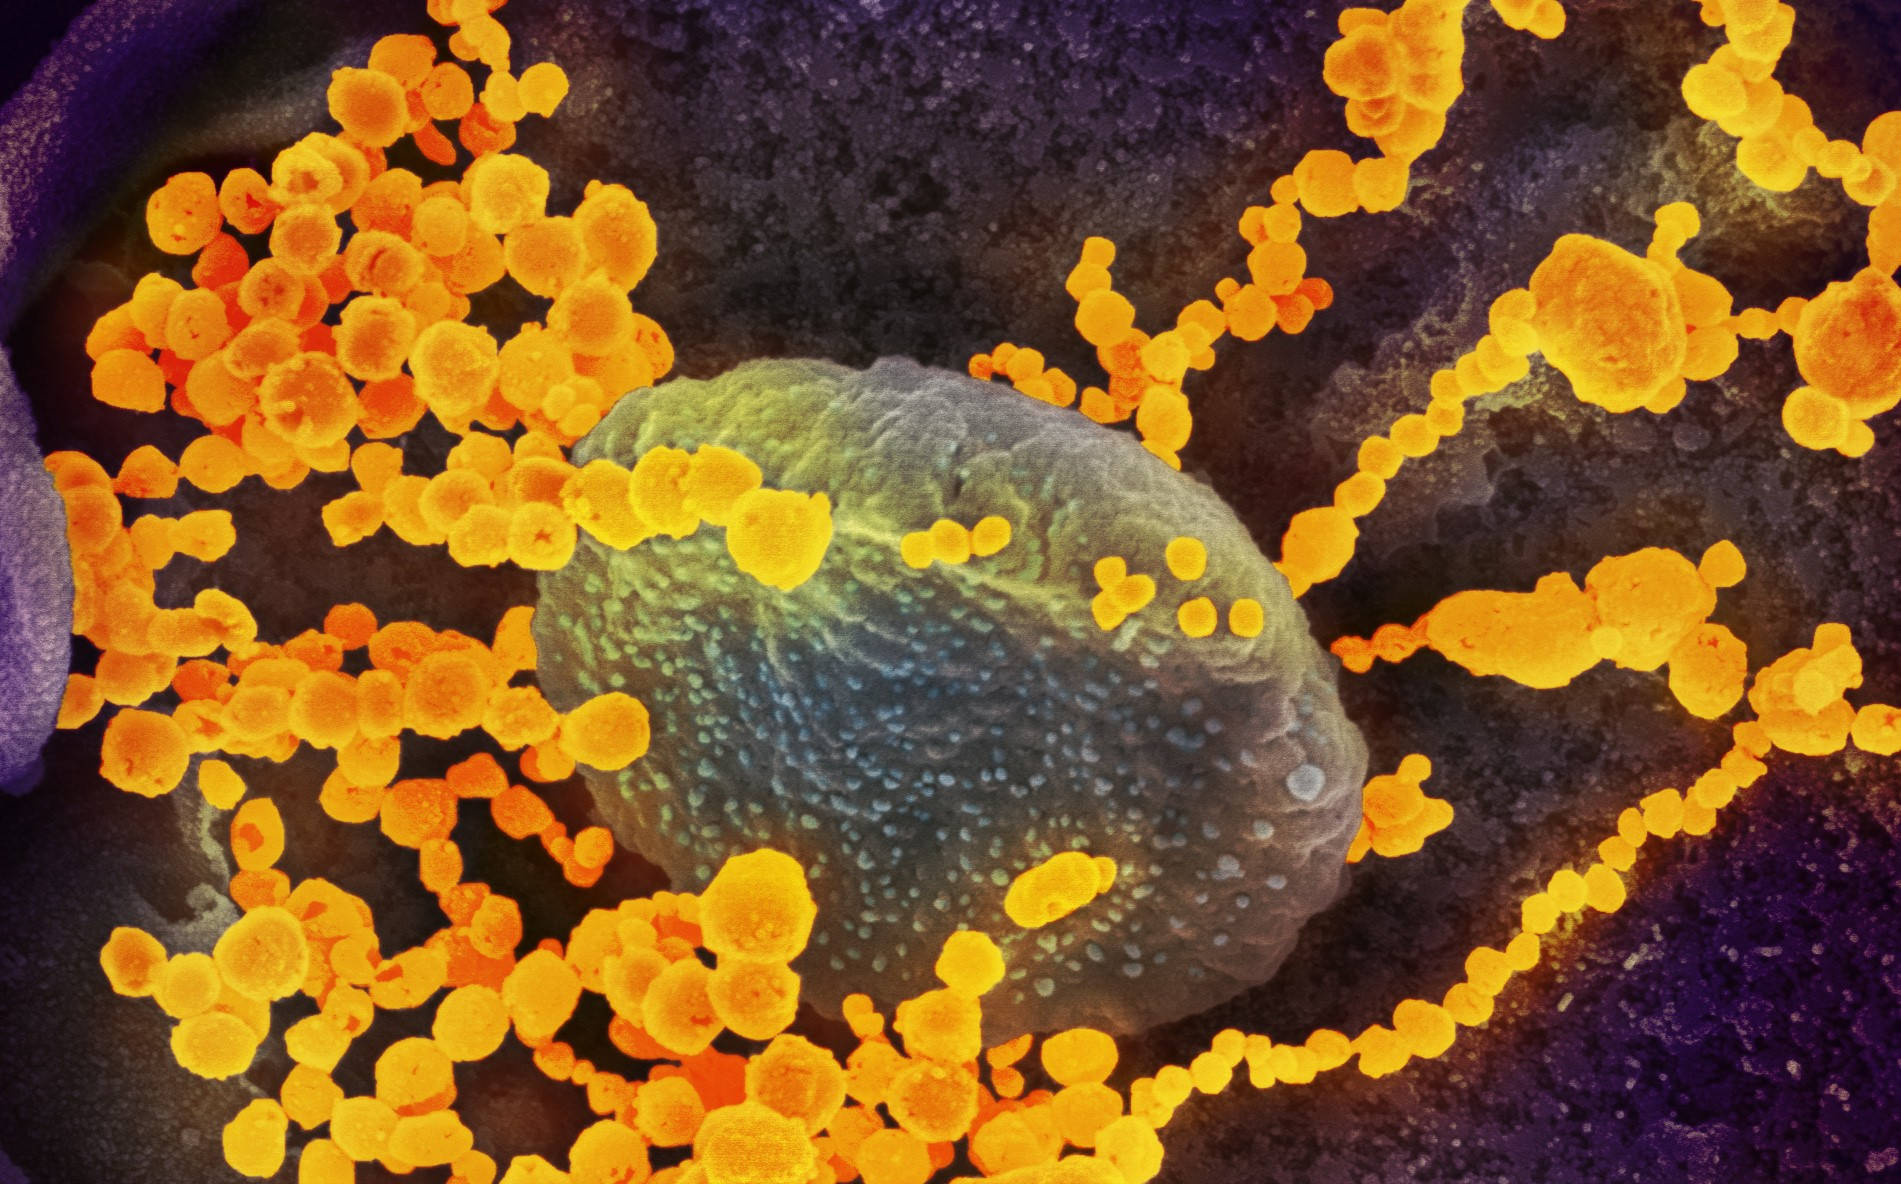 Coronavirus Yellow Particles Background